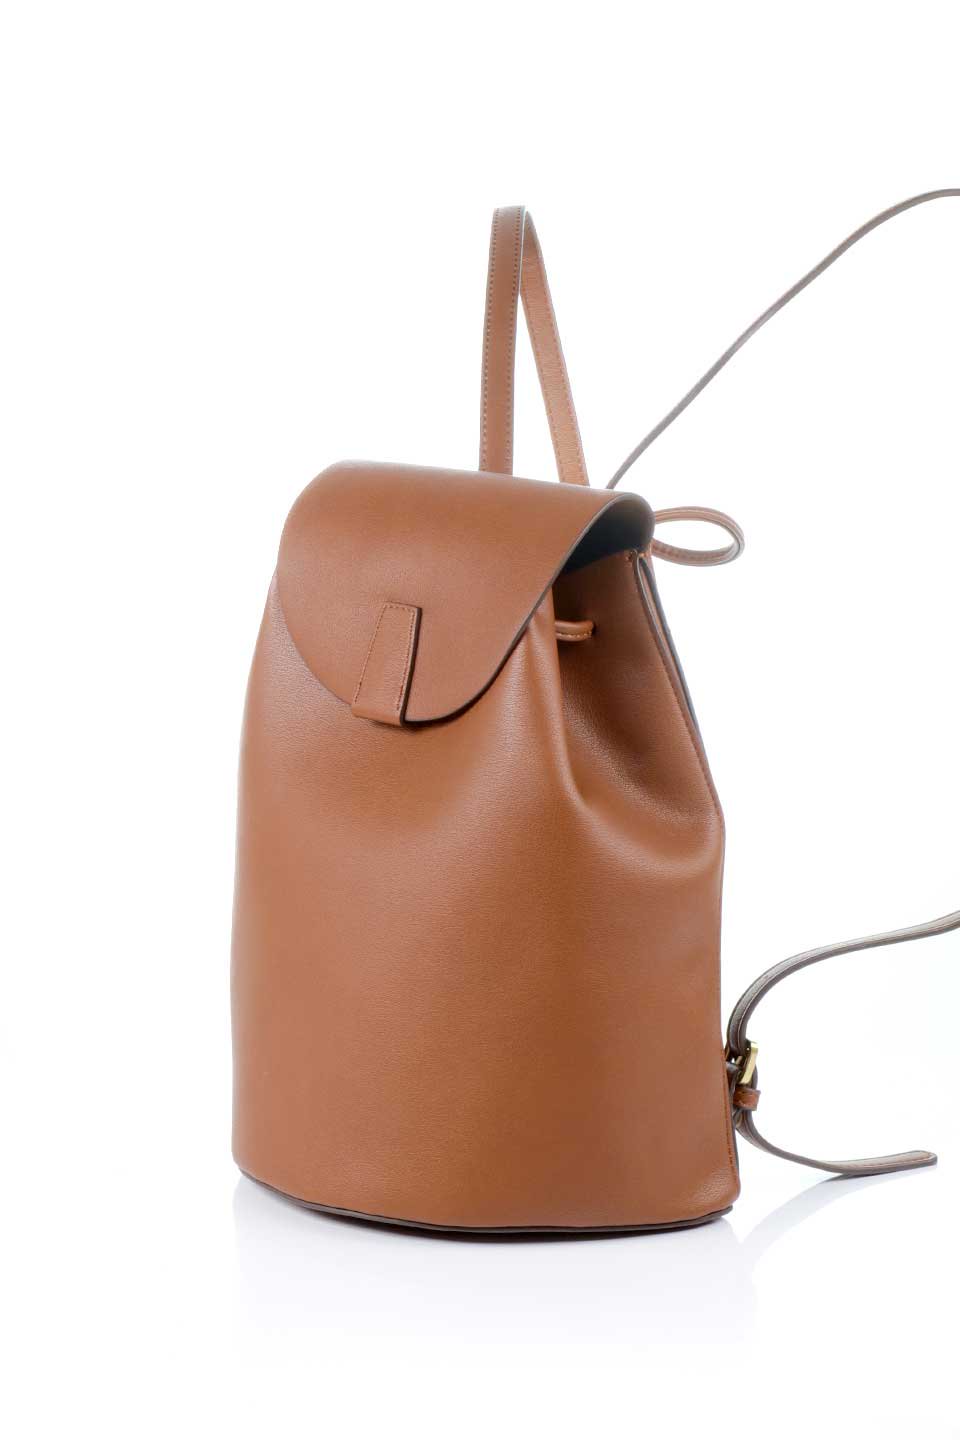 meliebiancoのAubrey(Saddle)ビーガンレザー・ミニリュック/海外ファッション好きにオススメのインポートバッグとかばん、MelieBianco（メリービアンコ）のバッグやその他。使いやすい程よい大きさのシンプルリュック。なめらかな高級ビーガンレザーを使用したシンプルデザインのアイテム。/thumb-1